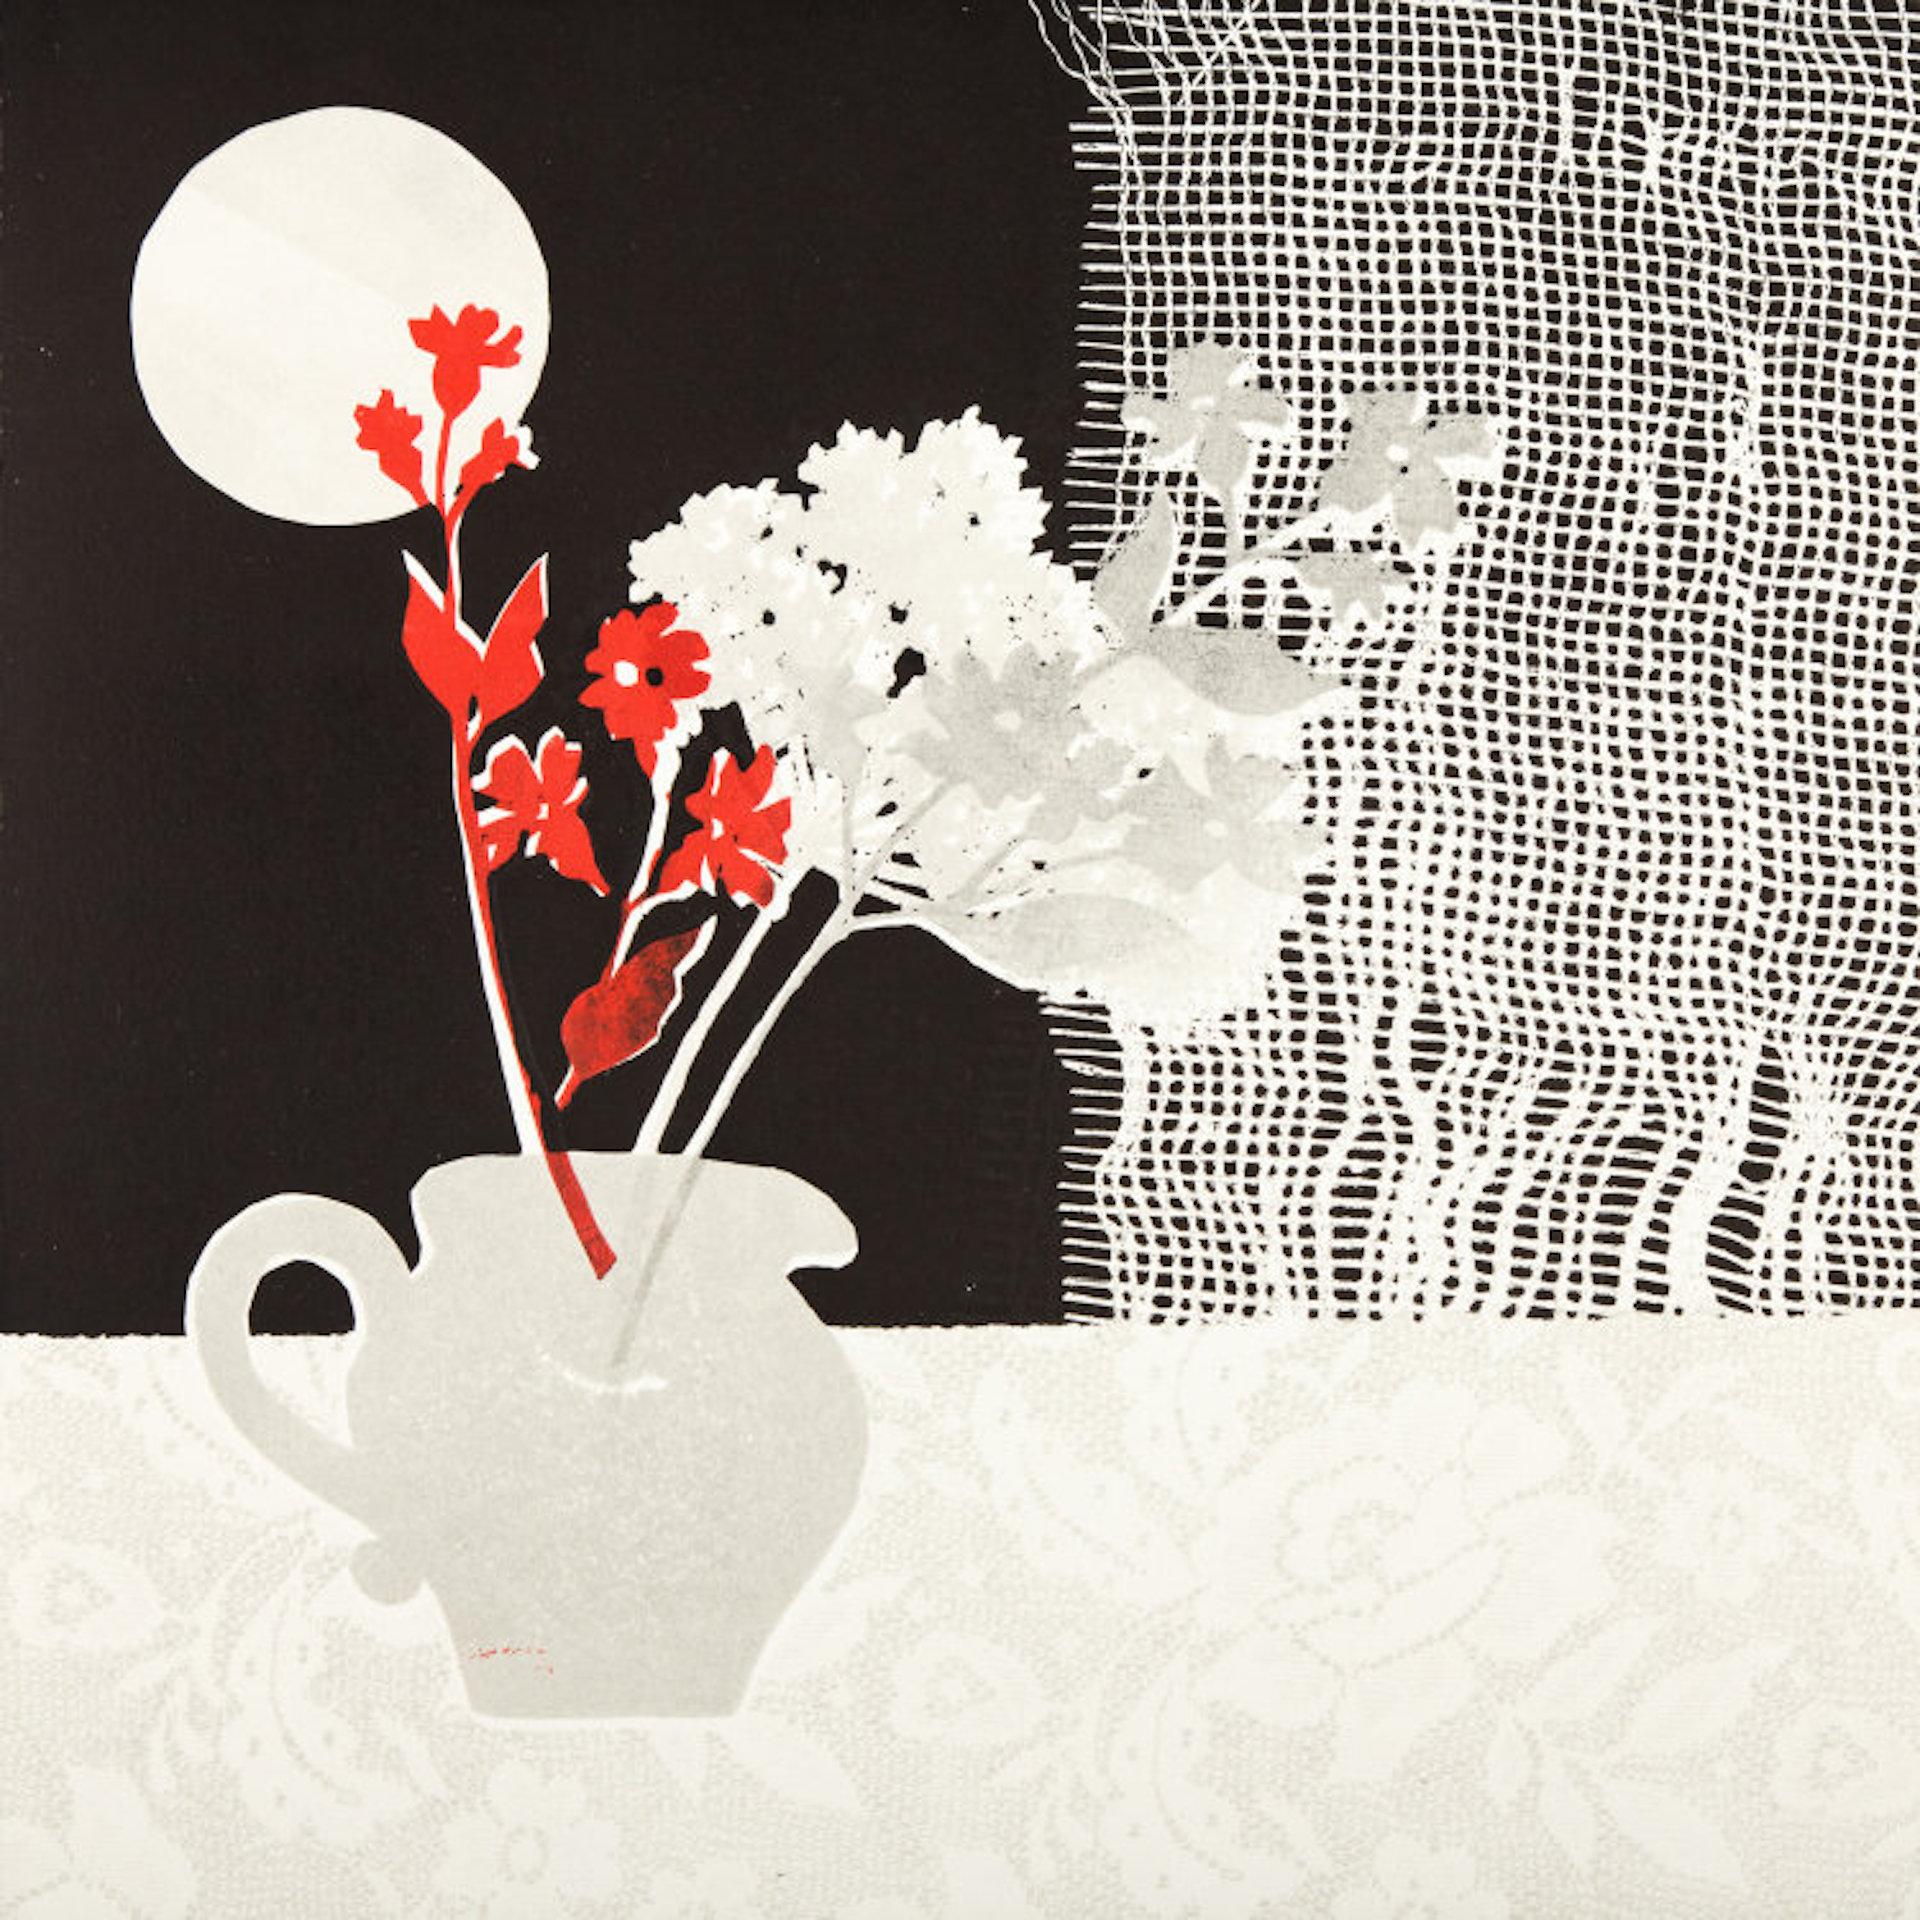 Stillleben mit Netzvorhang ist ein einzigartiger Monodruck von Rosemary Farrer. Die einfachen Formen und die kontrastierenden Farben verleihen dem Werk eine mehrschichtige Wirkung.
Die Drucke sind keineswegs Kopien der Gemälde, sondern eine Antwort